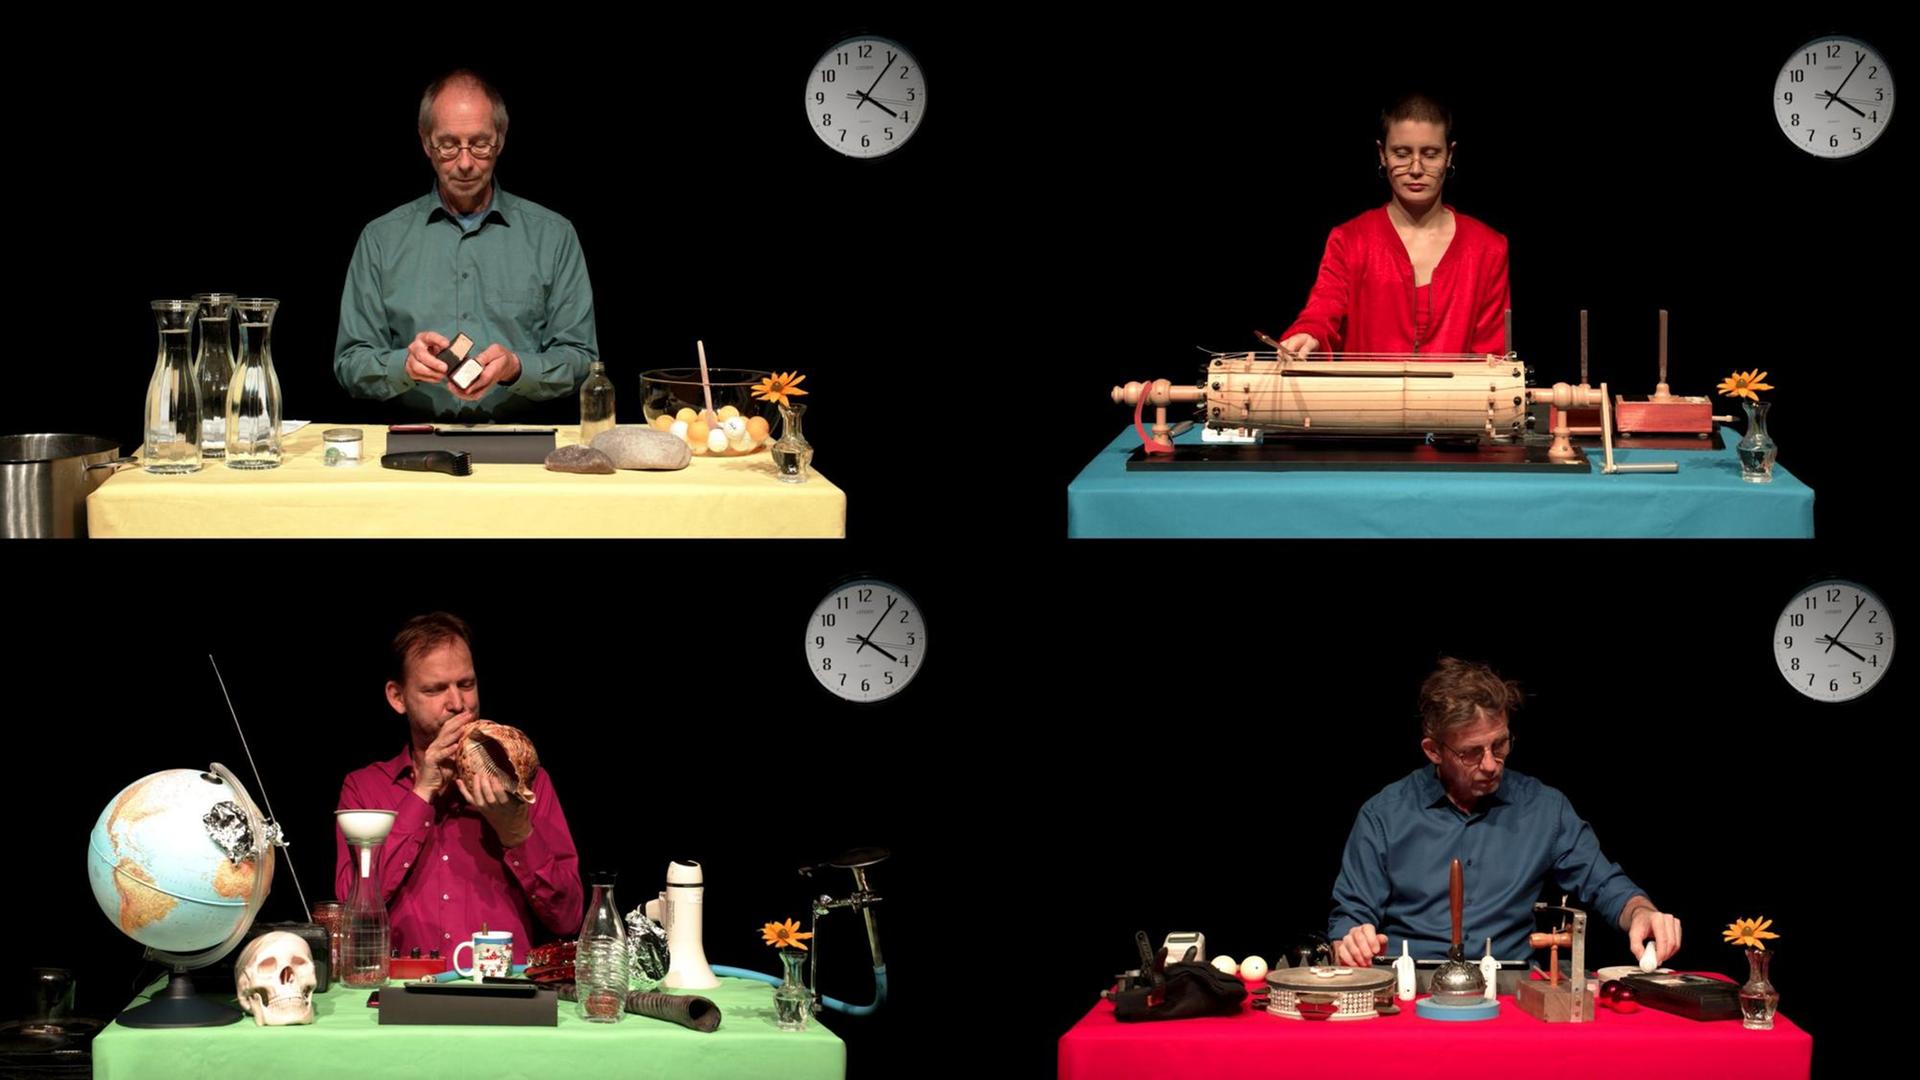 Ausschnitt einer Videoperformance: Drei Männer und eine Frau sitzen an vier verschieden arrangierten Einzeltischen. Jeder hat Instrumente und Alltagsgegenstände darauf. Im Hintergrund hängt je eine Uhr, die 4:06 Uhr zeigt.